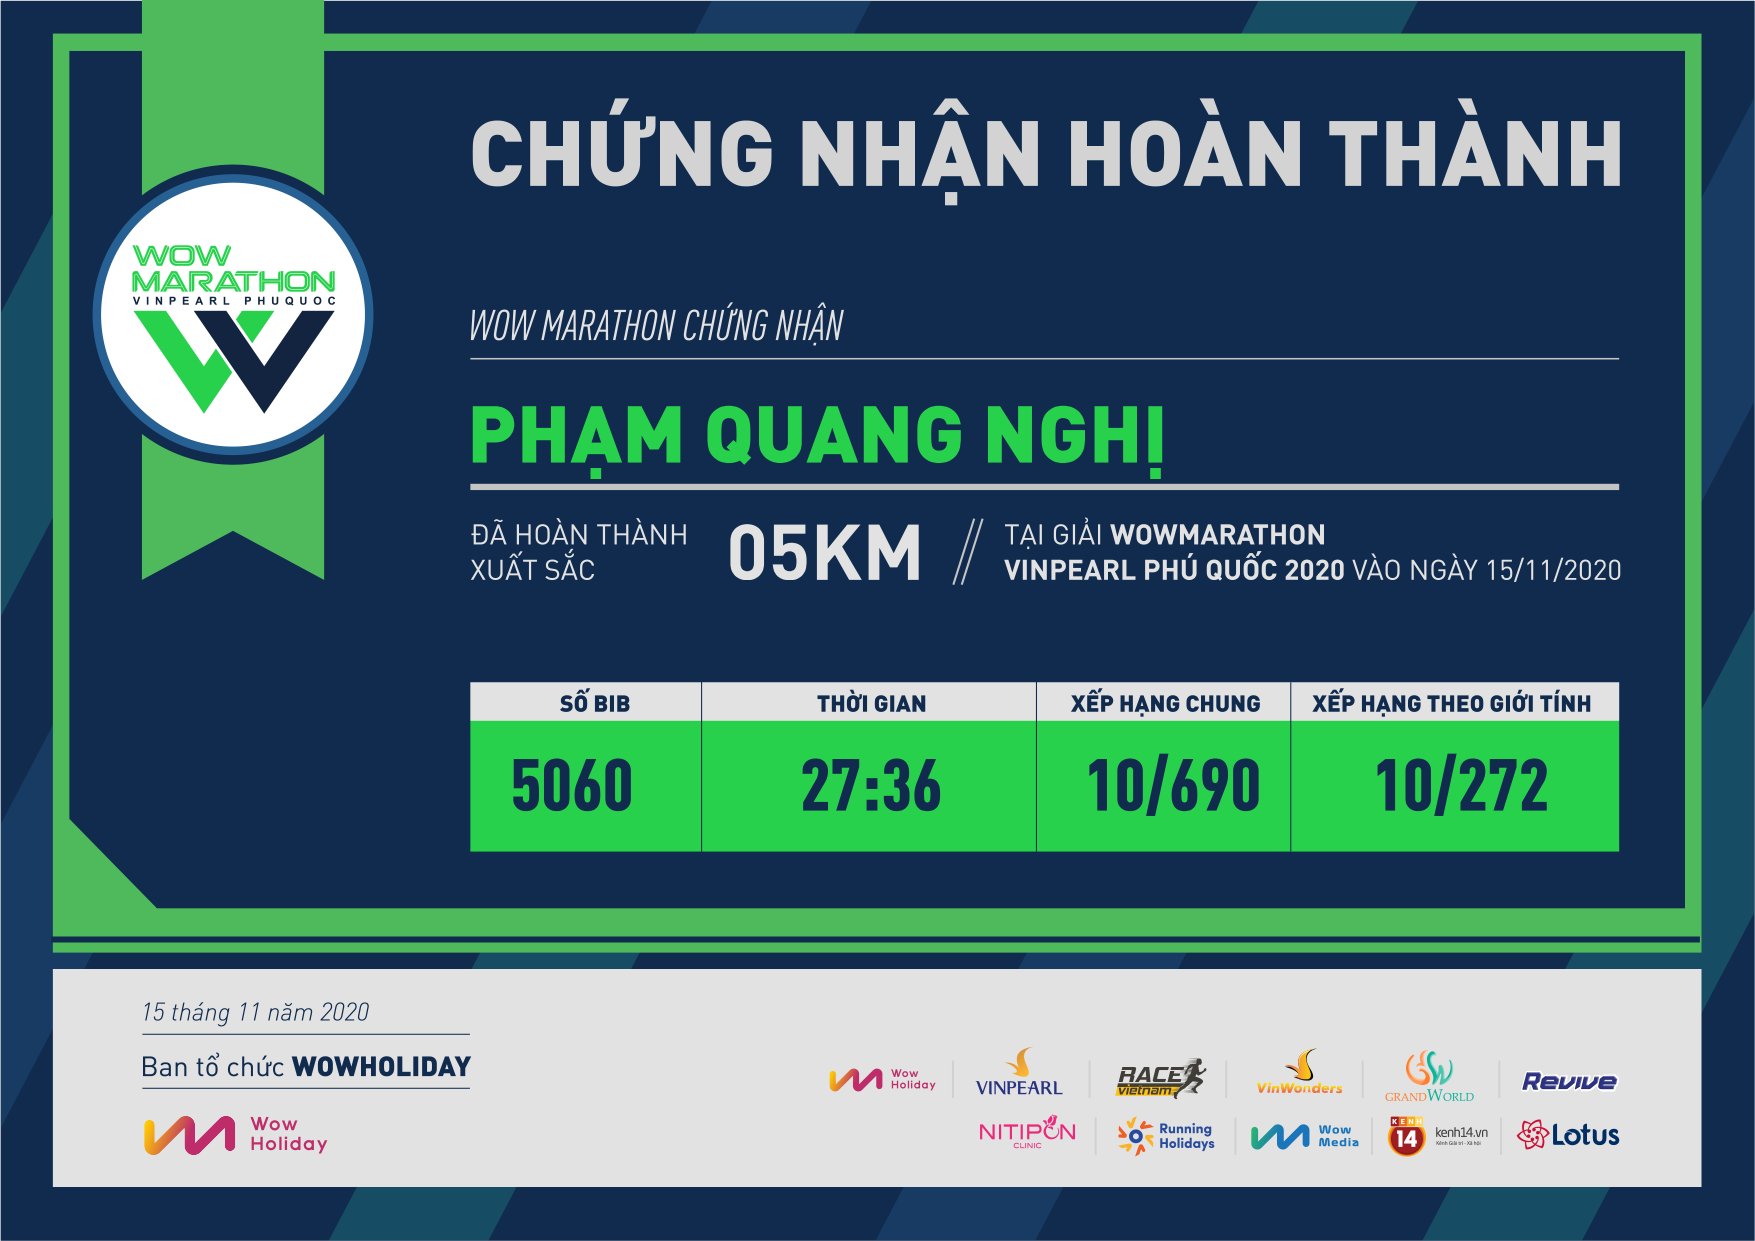 5060 - Phạm Quang Nghị